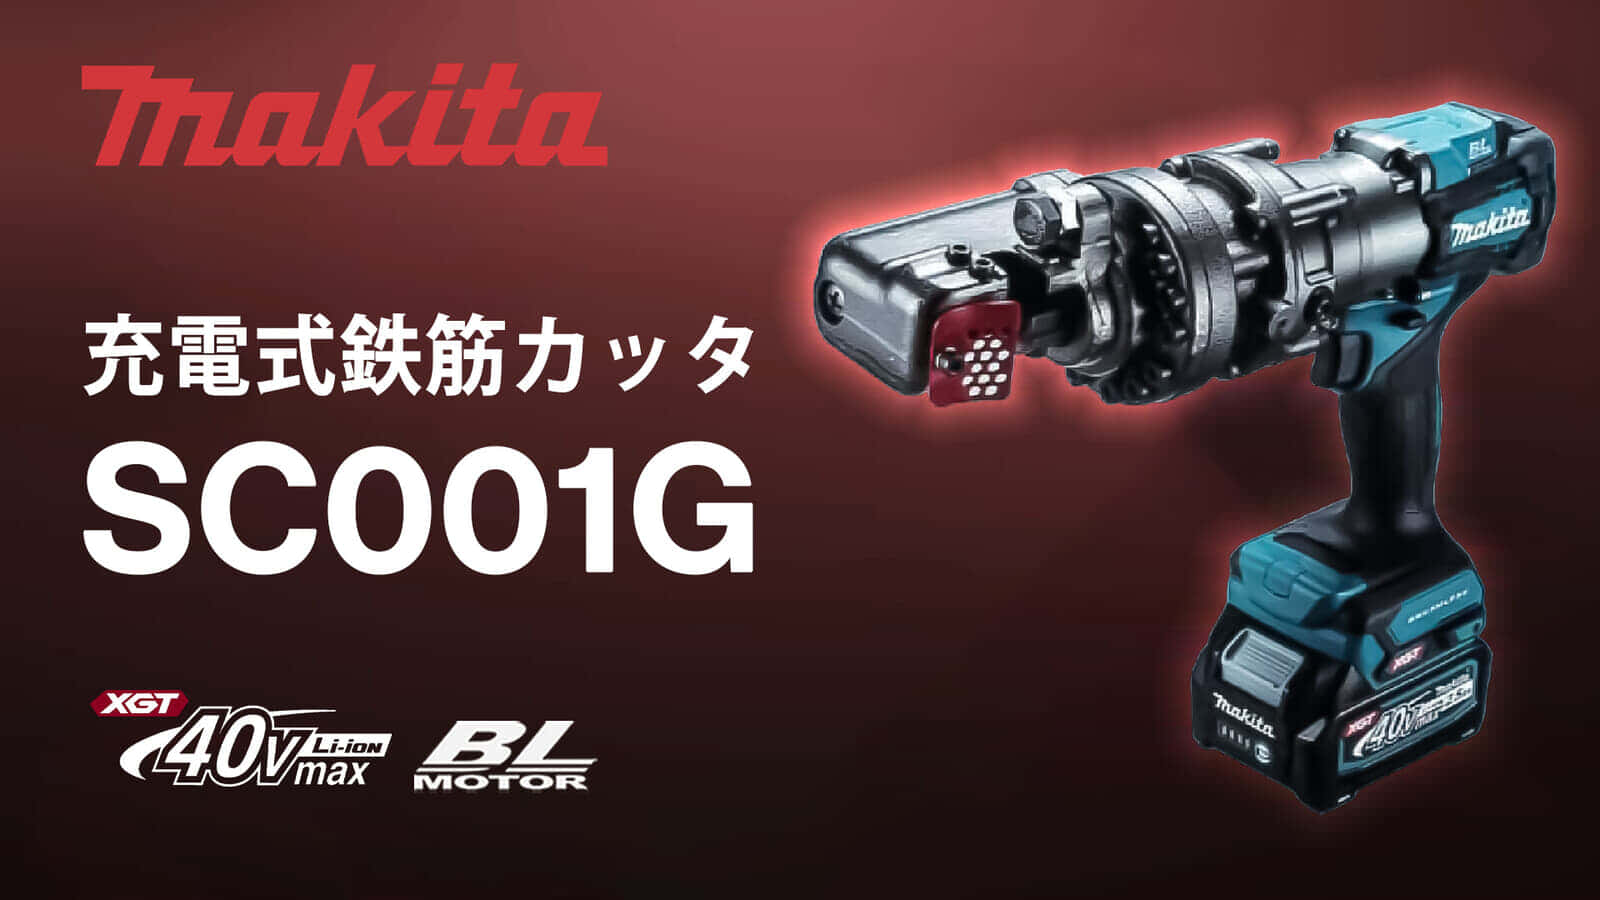 マキタ SC001G 充電式鉄筋カッタを発売、40Vmax対応で史上最速 1.7秒 